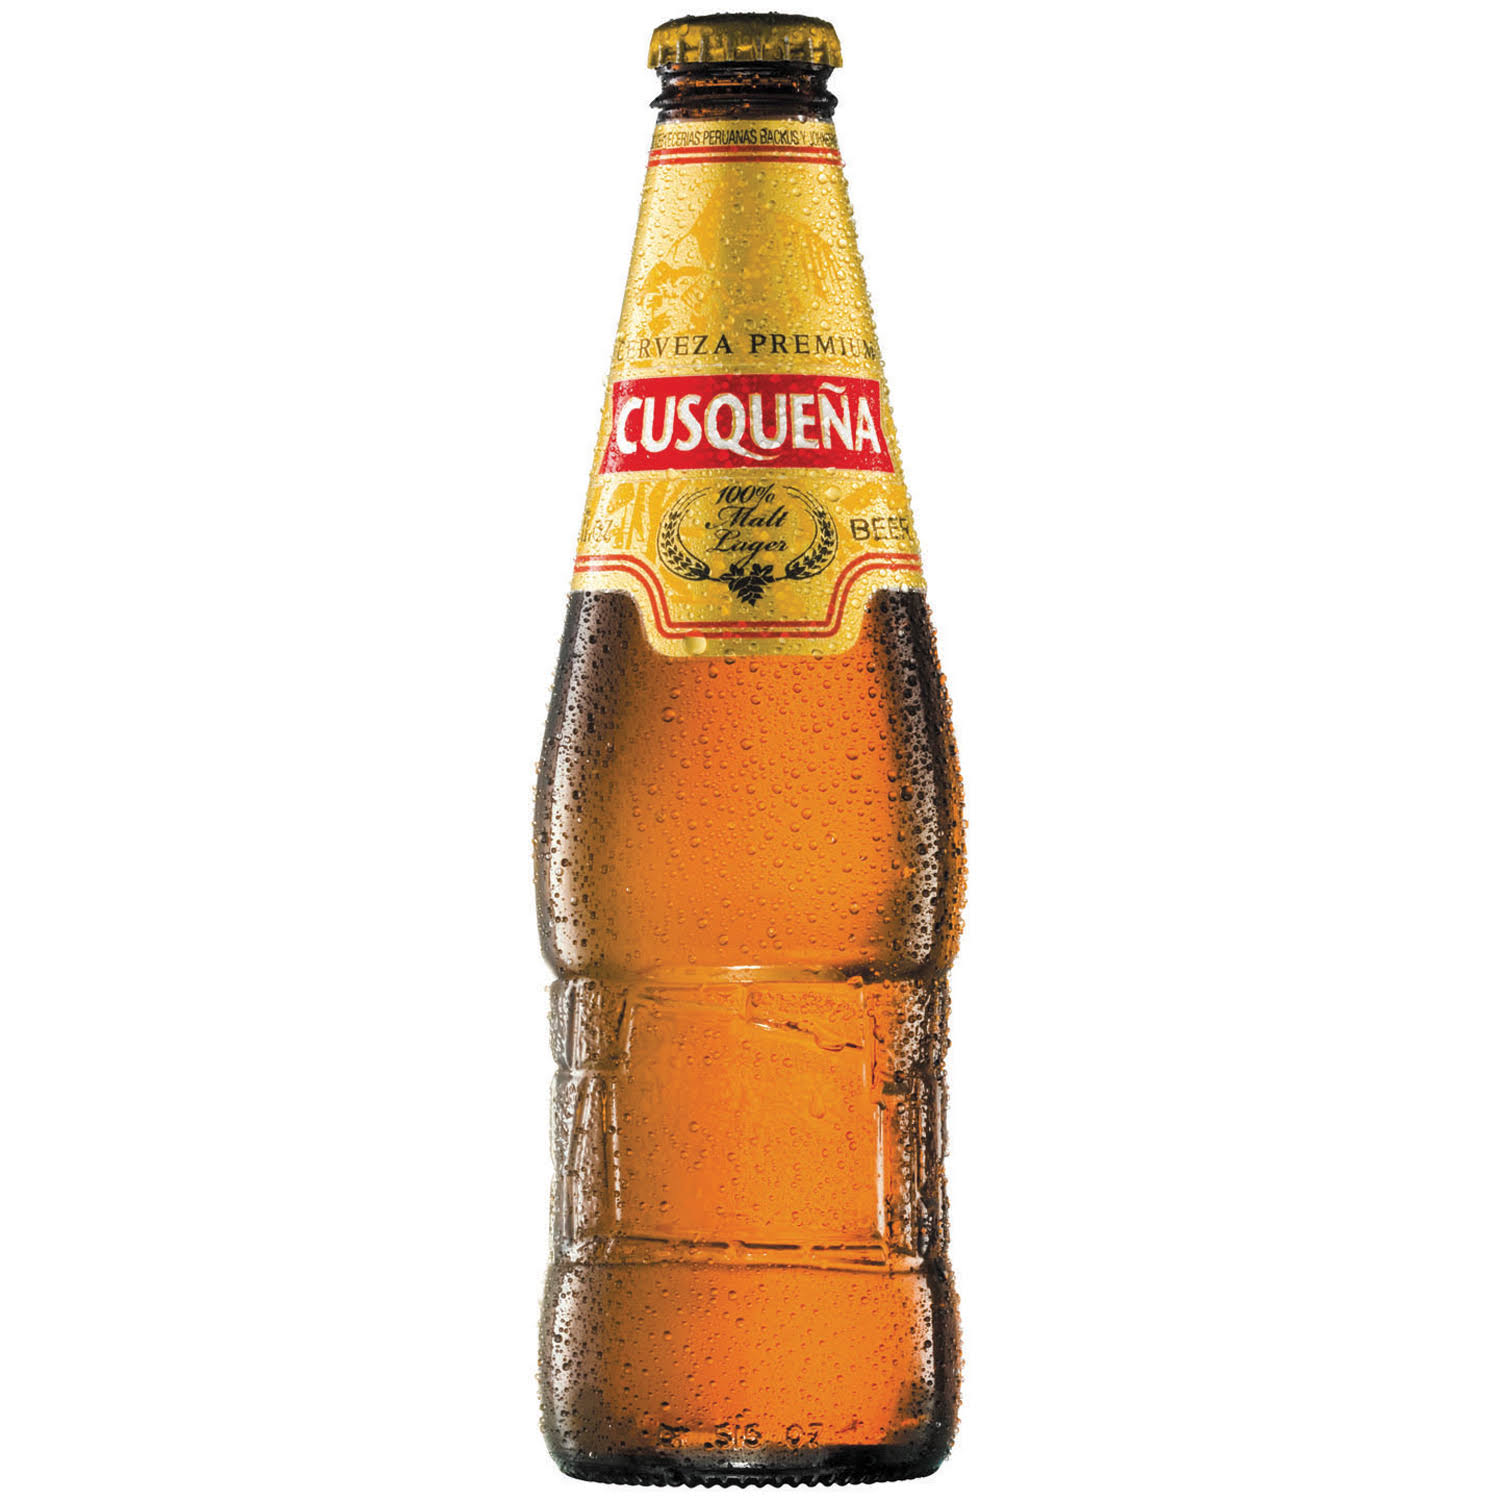 Cusquena Premium Imported Beer - 11.16 fl oz